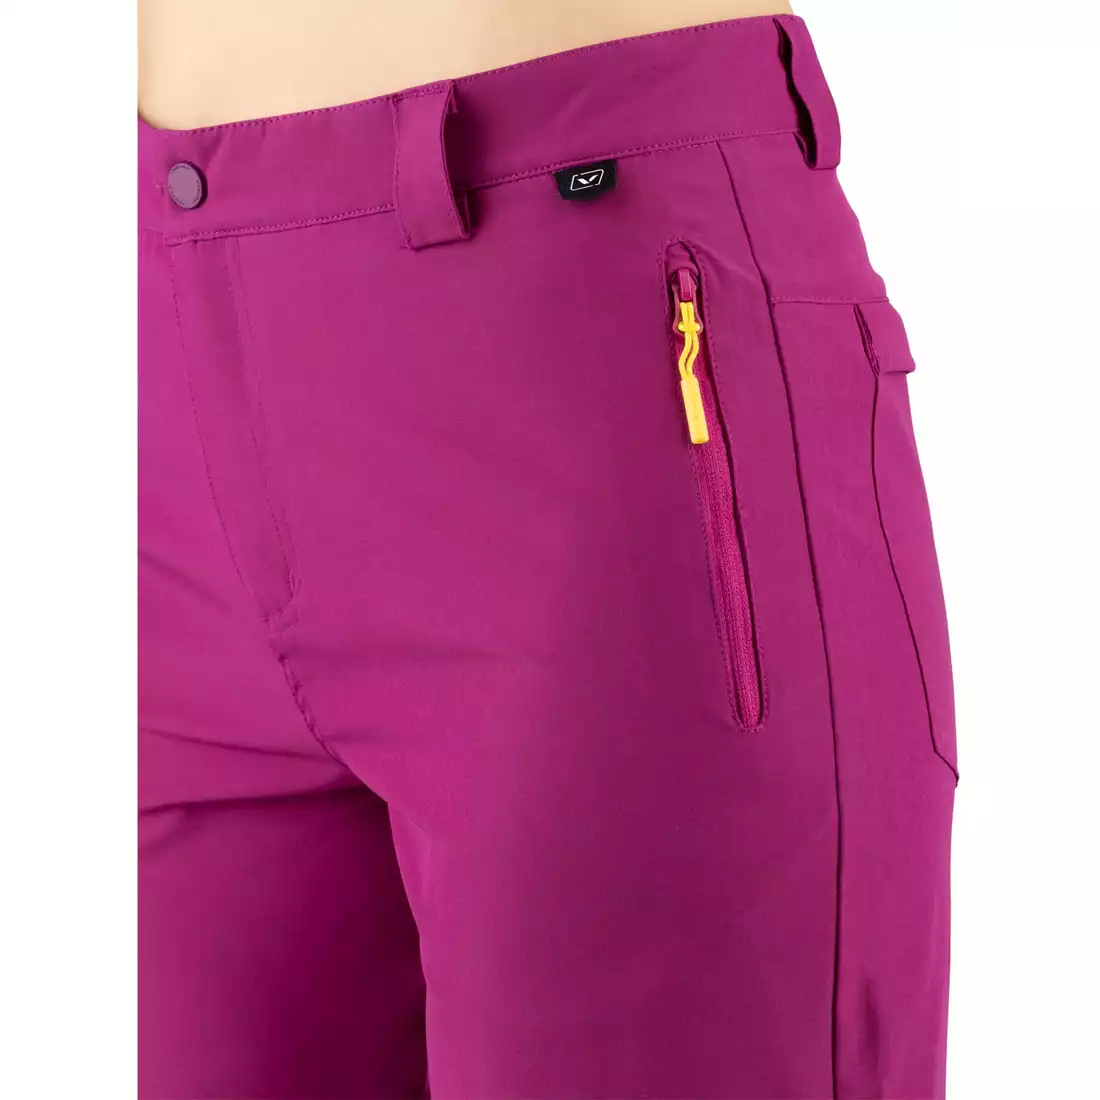 VIKING Dámske športové šortky, trekingové šortky Sumatra Shorts Lady 800/24/9565/4600 fialový